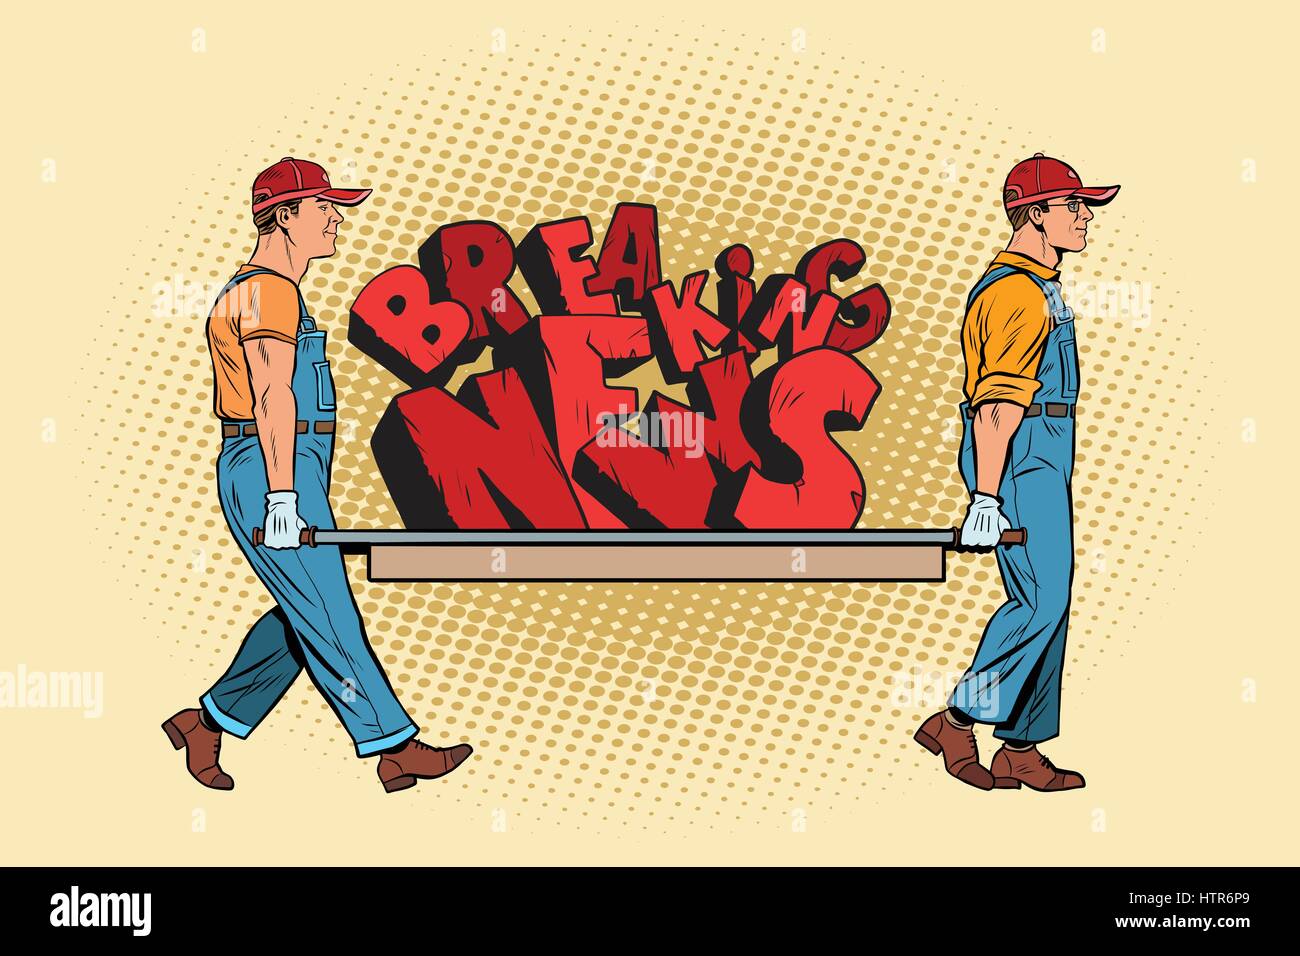 Breaking News-Arbeiter tragen auf einer Bahre Stock Vektor